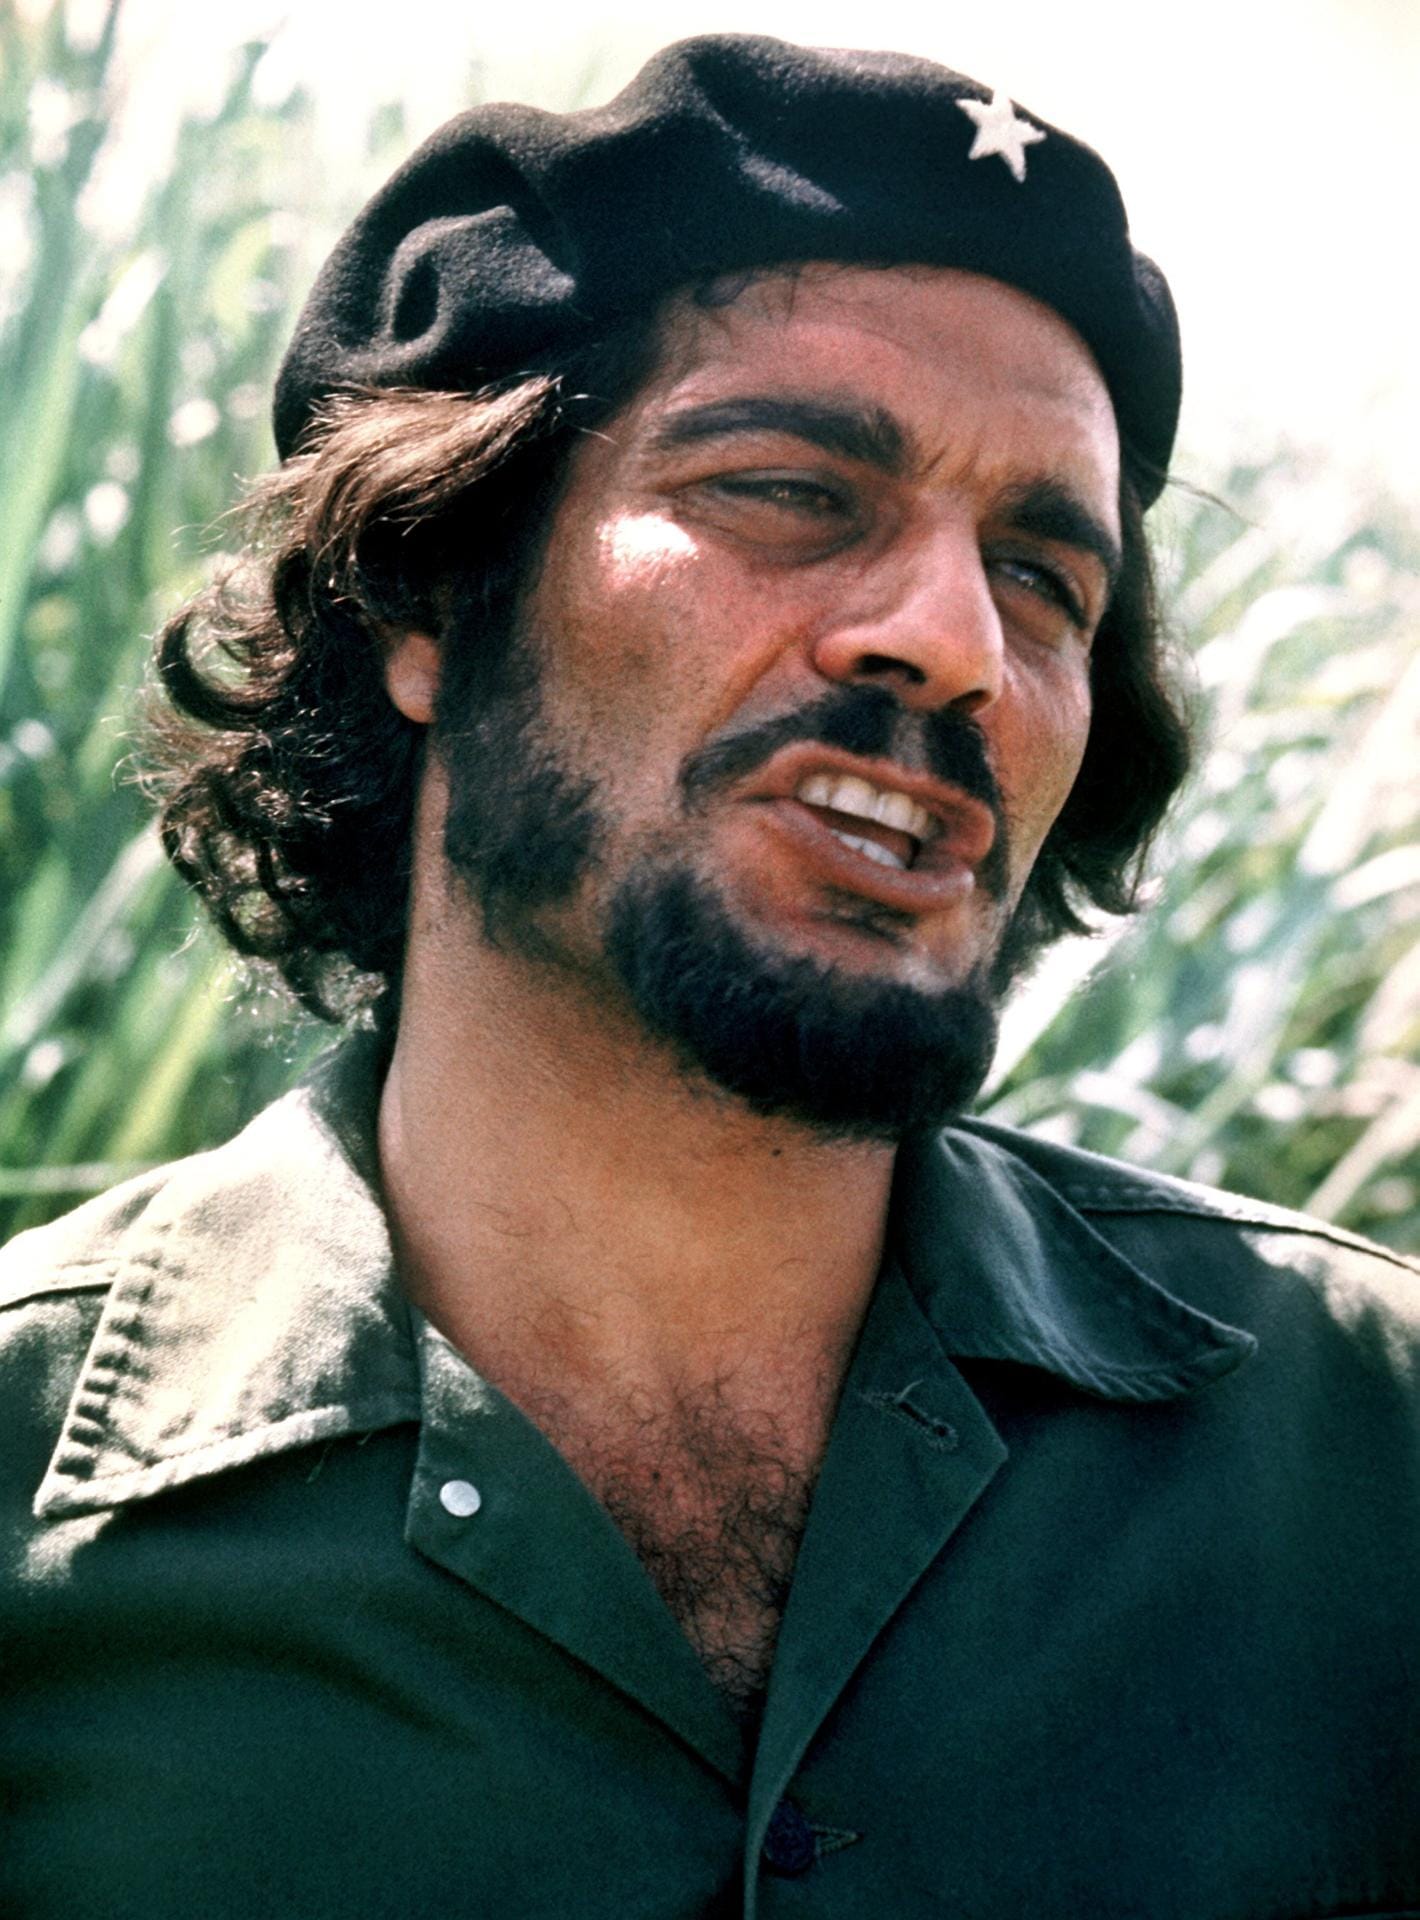 Omar Sharif als "Che Guevara" in dem Film "Che" (1969), der vom Leben und Sterben des kubanischen Revolutionärs Ernesto Che Guevara handelt.